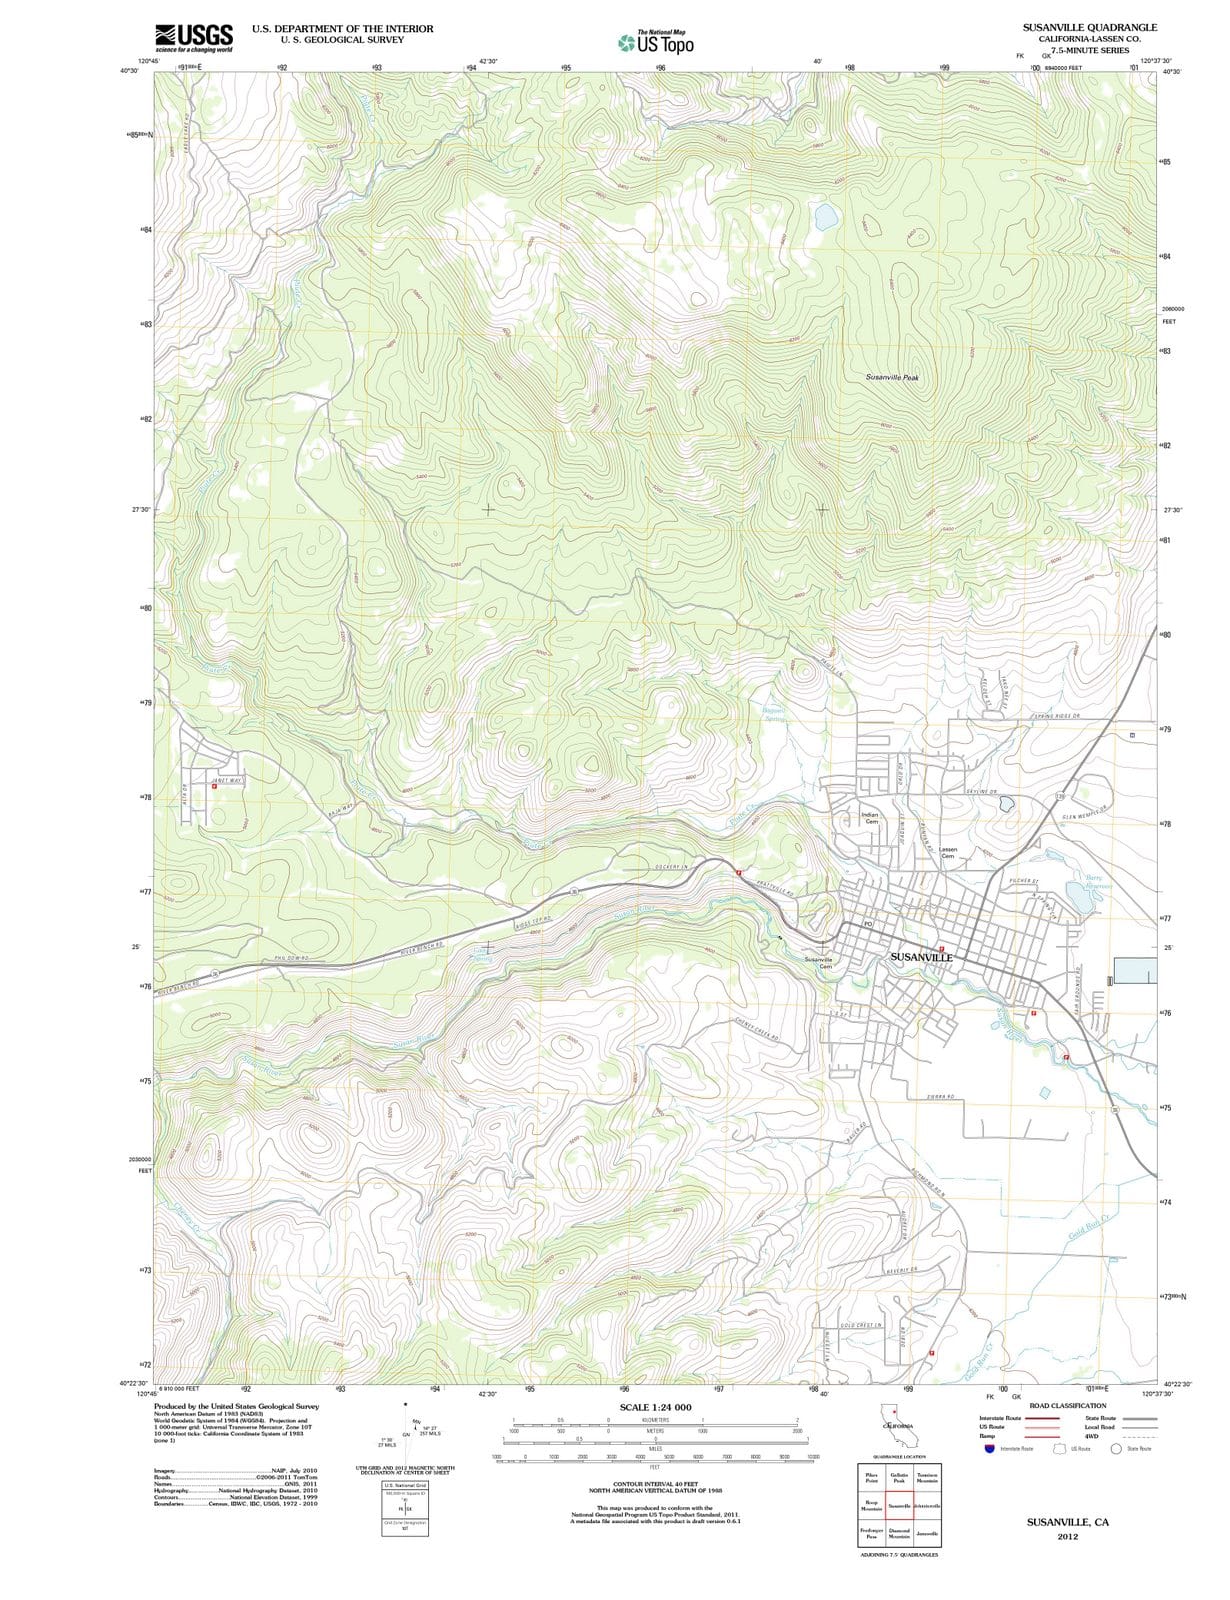 2012 Susanville, CA - California - USGS Topographic Map